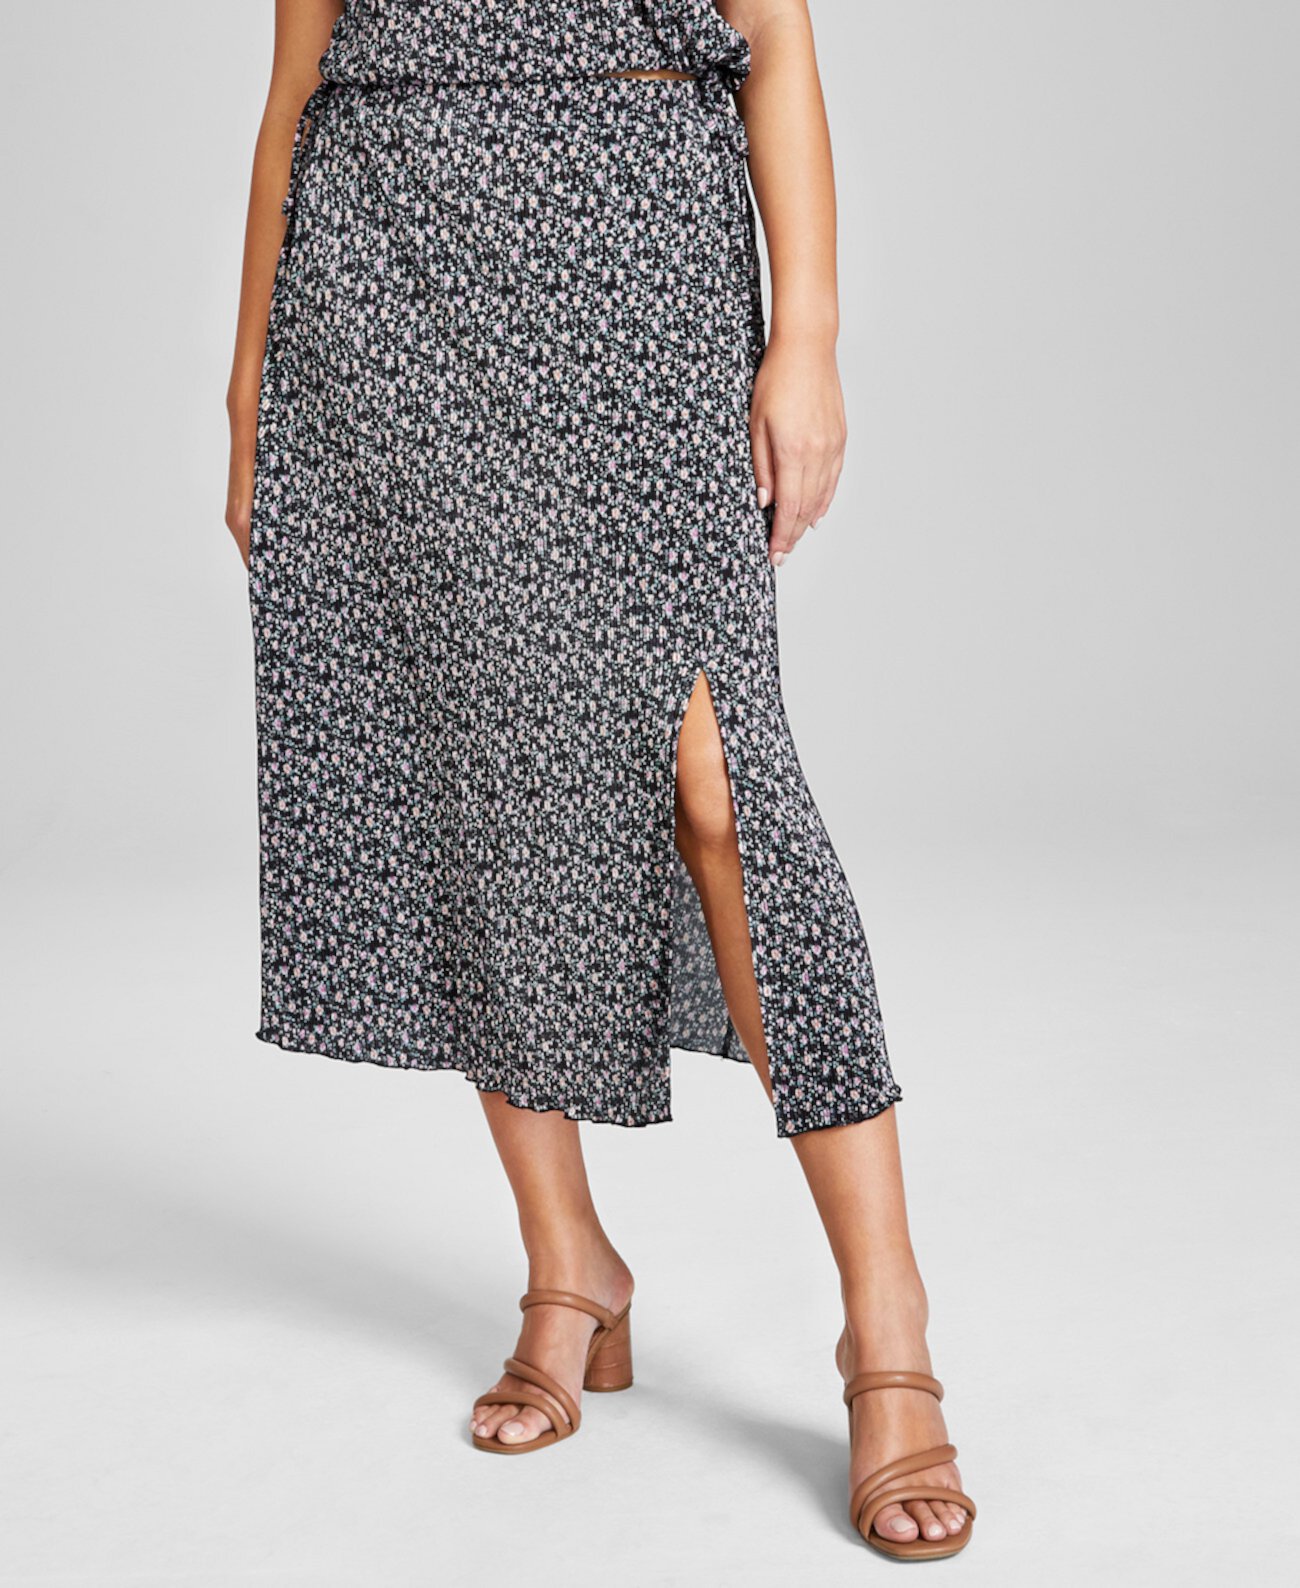 Женская плиссированная юбка-миди с цветочным принтом, созданная для Macy's And Now This